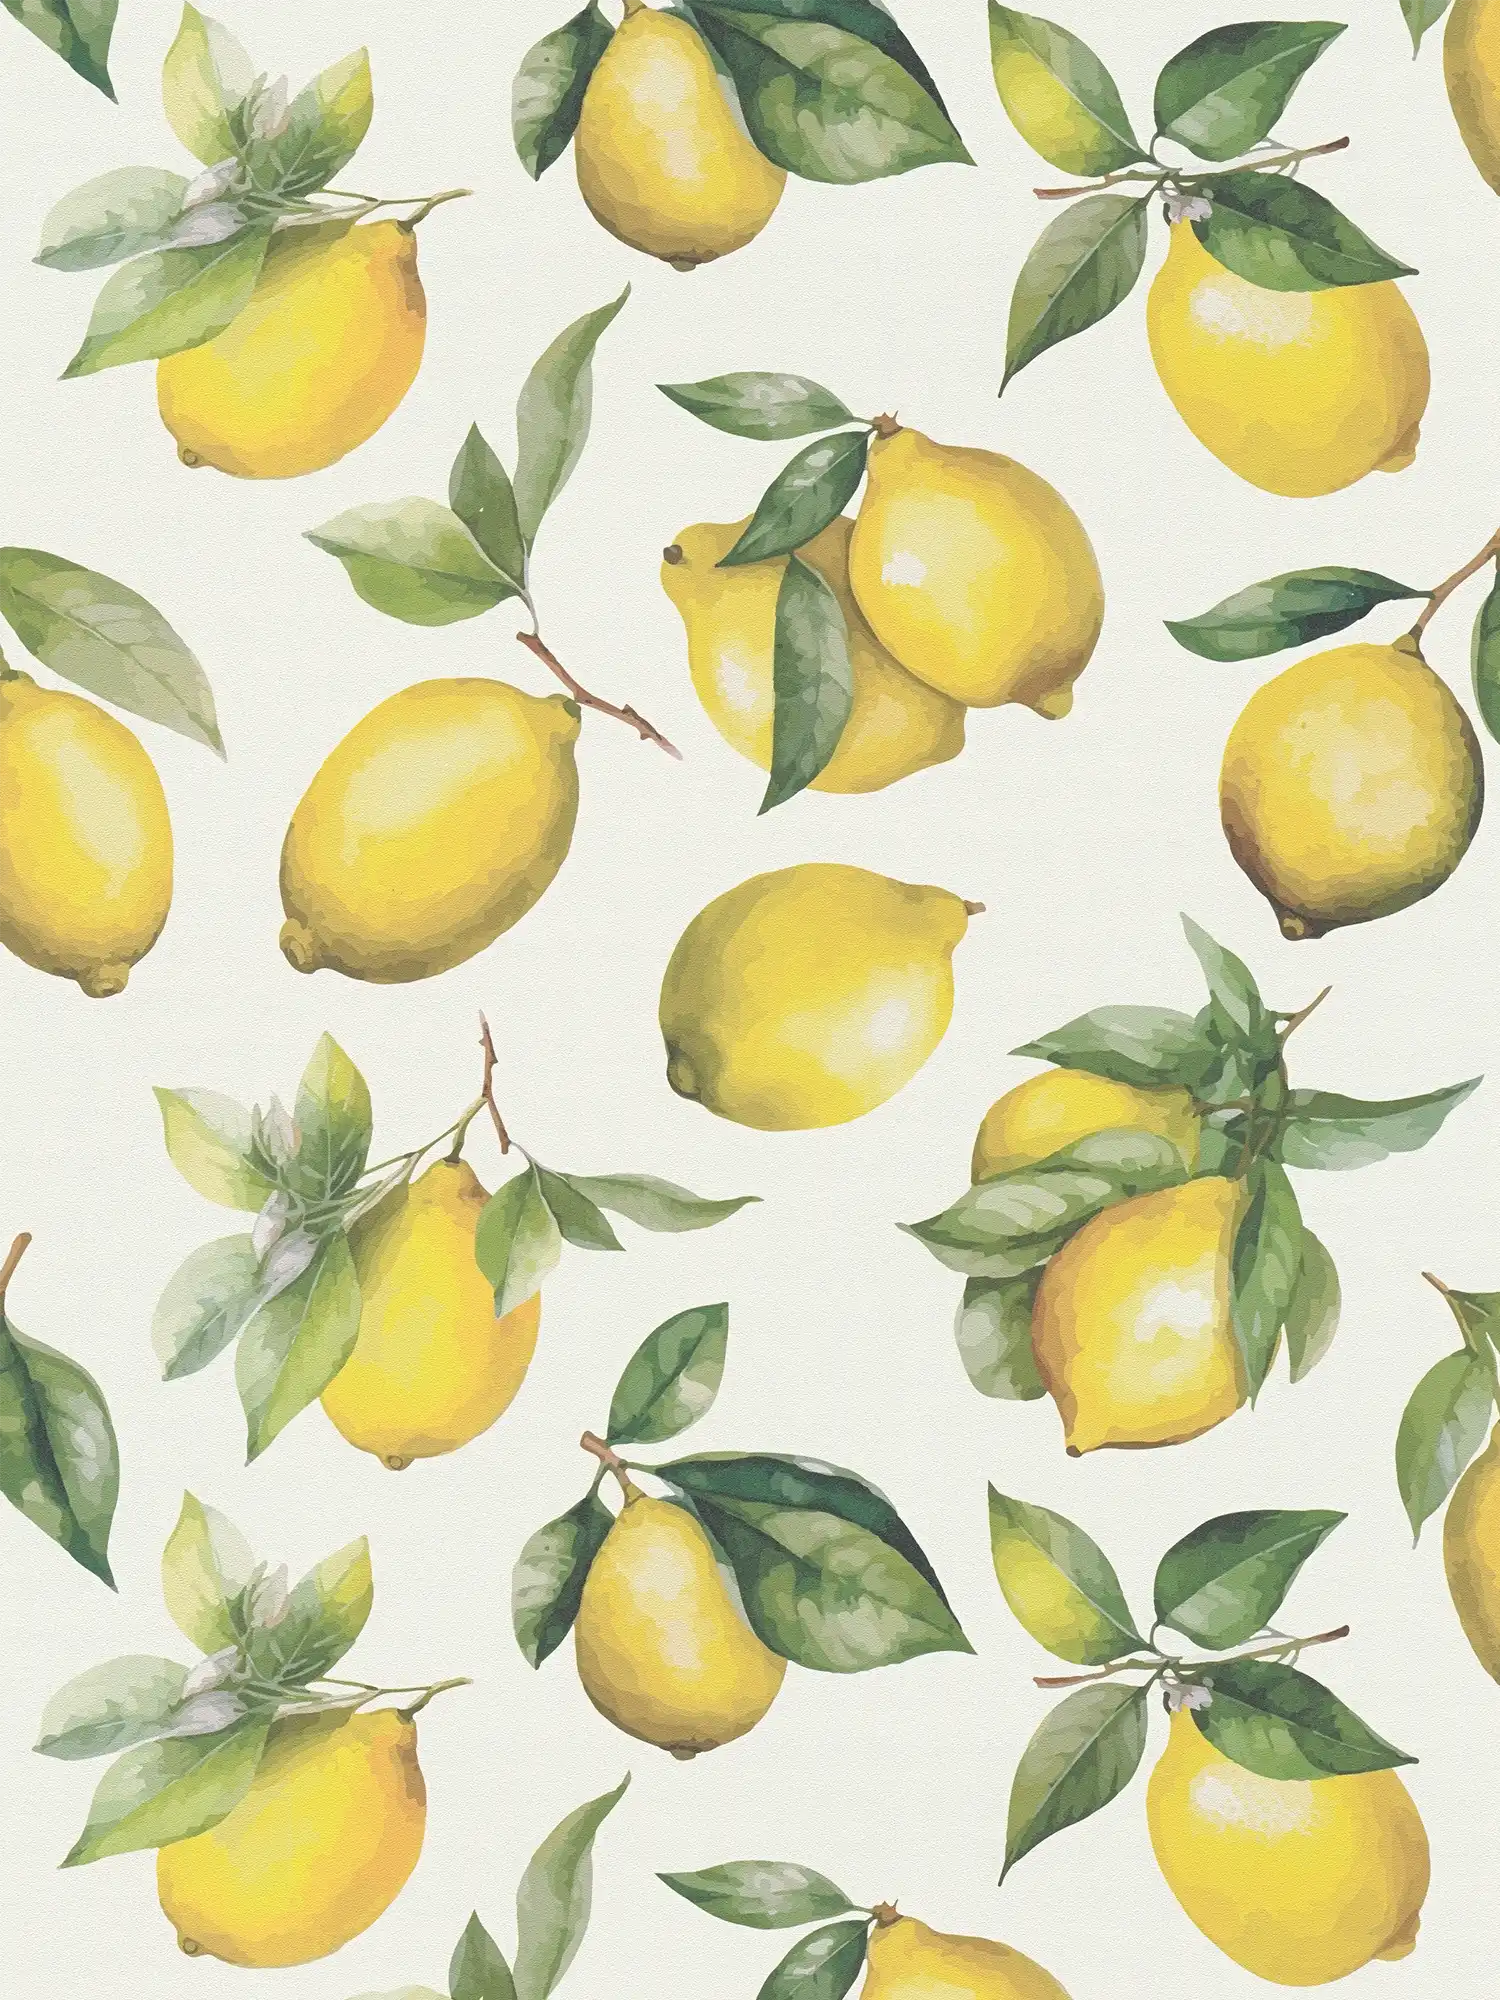         Vliestapete mit gemaltem Zitronen Motiv – weiß, gelb, grün
    